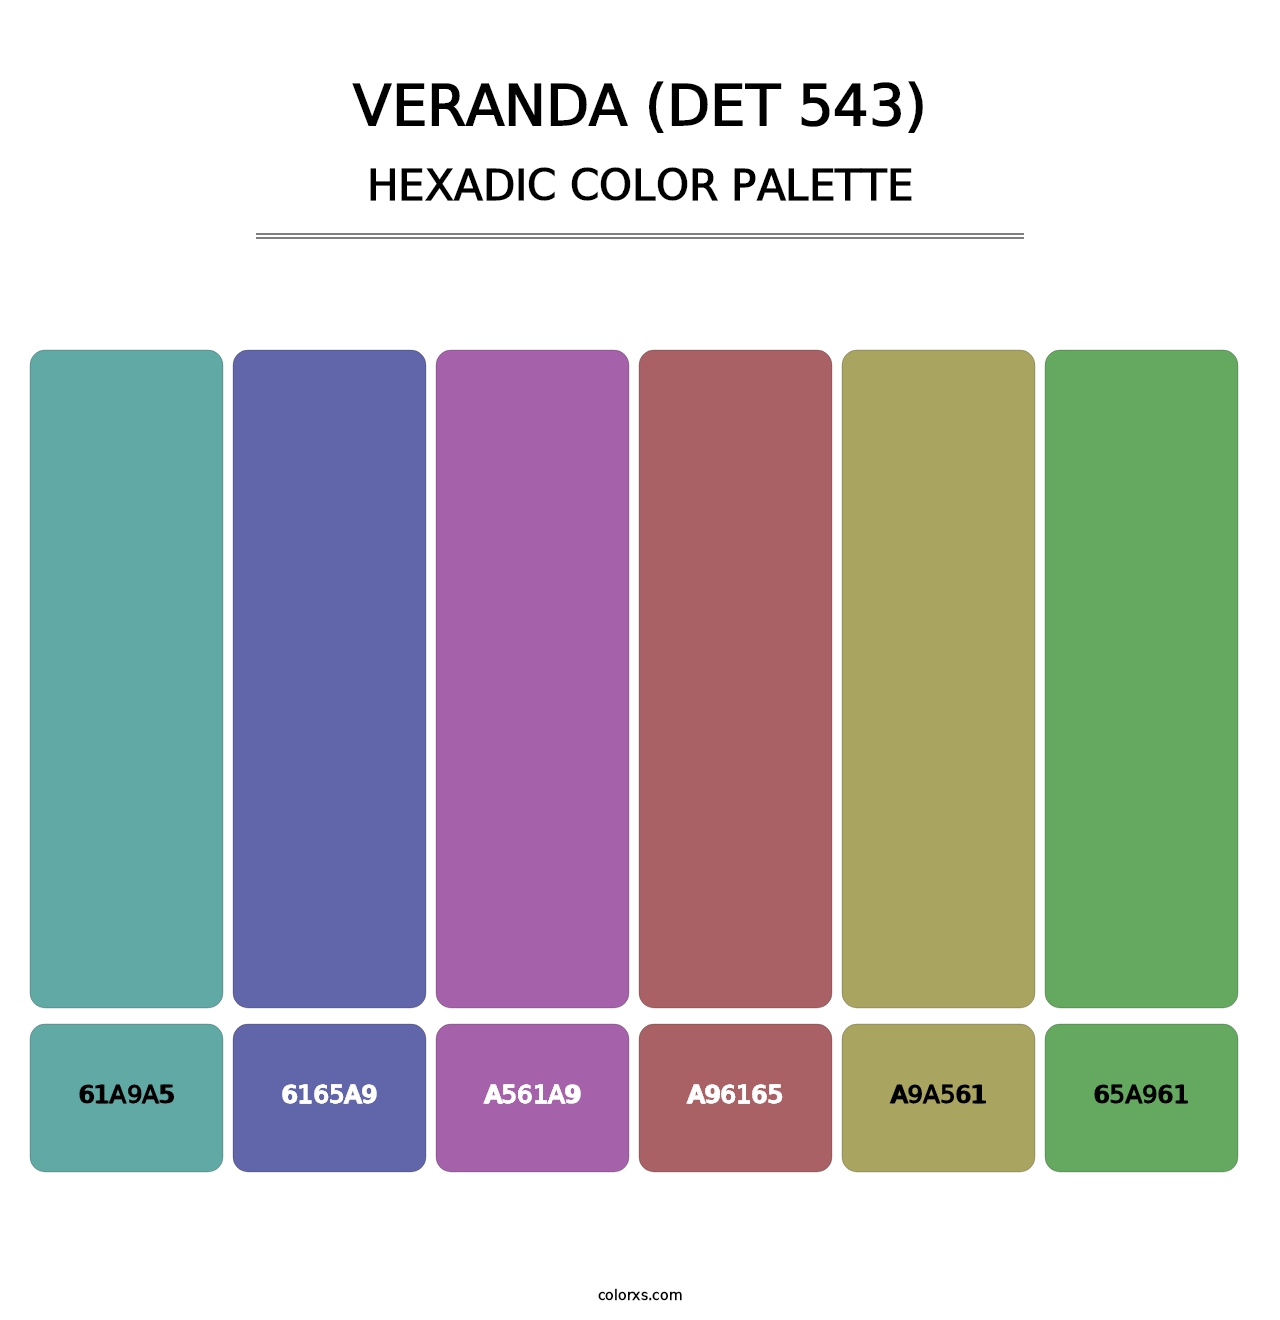 Veranda (DET 543) - Hexadic Color Palette